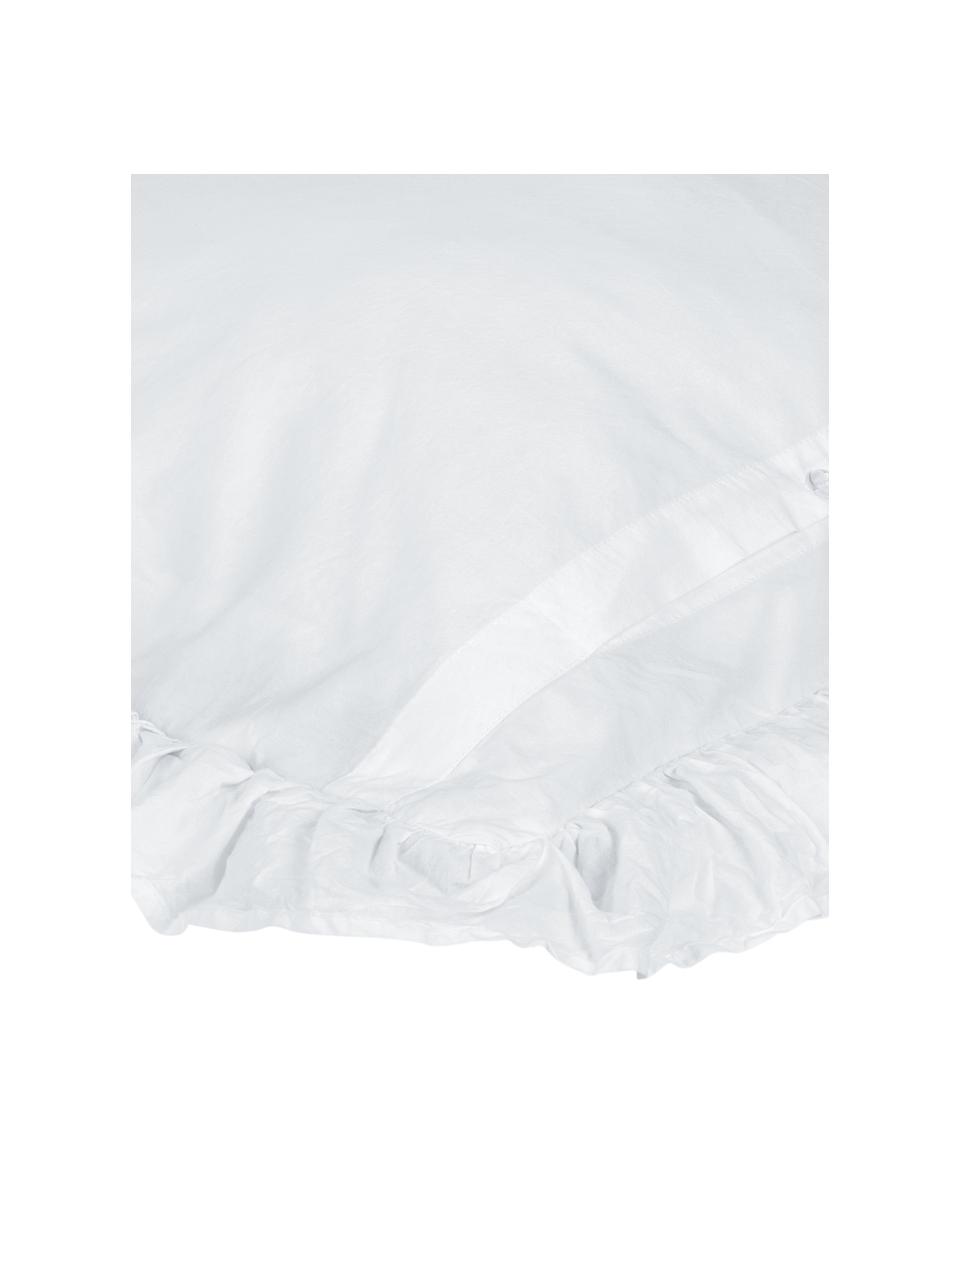 Gewaschene Baumwollperkal-Kopfkissenbezüge Florence mit Rüschen in Weiß, 2 Stück, Webart: Perkal Fadendichte 180 TC, Weiß, B 40 x L 80 cm